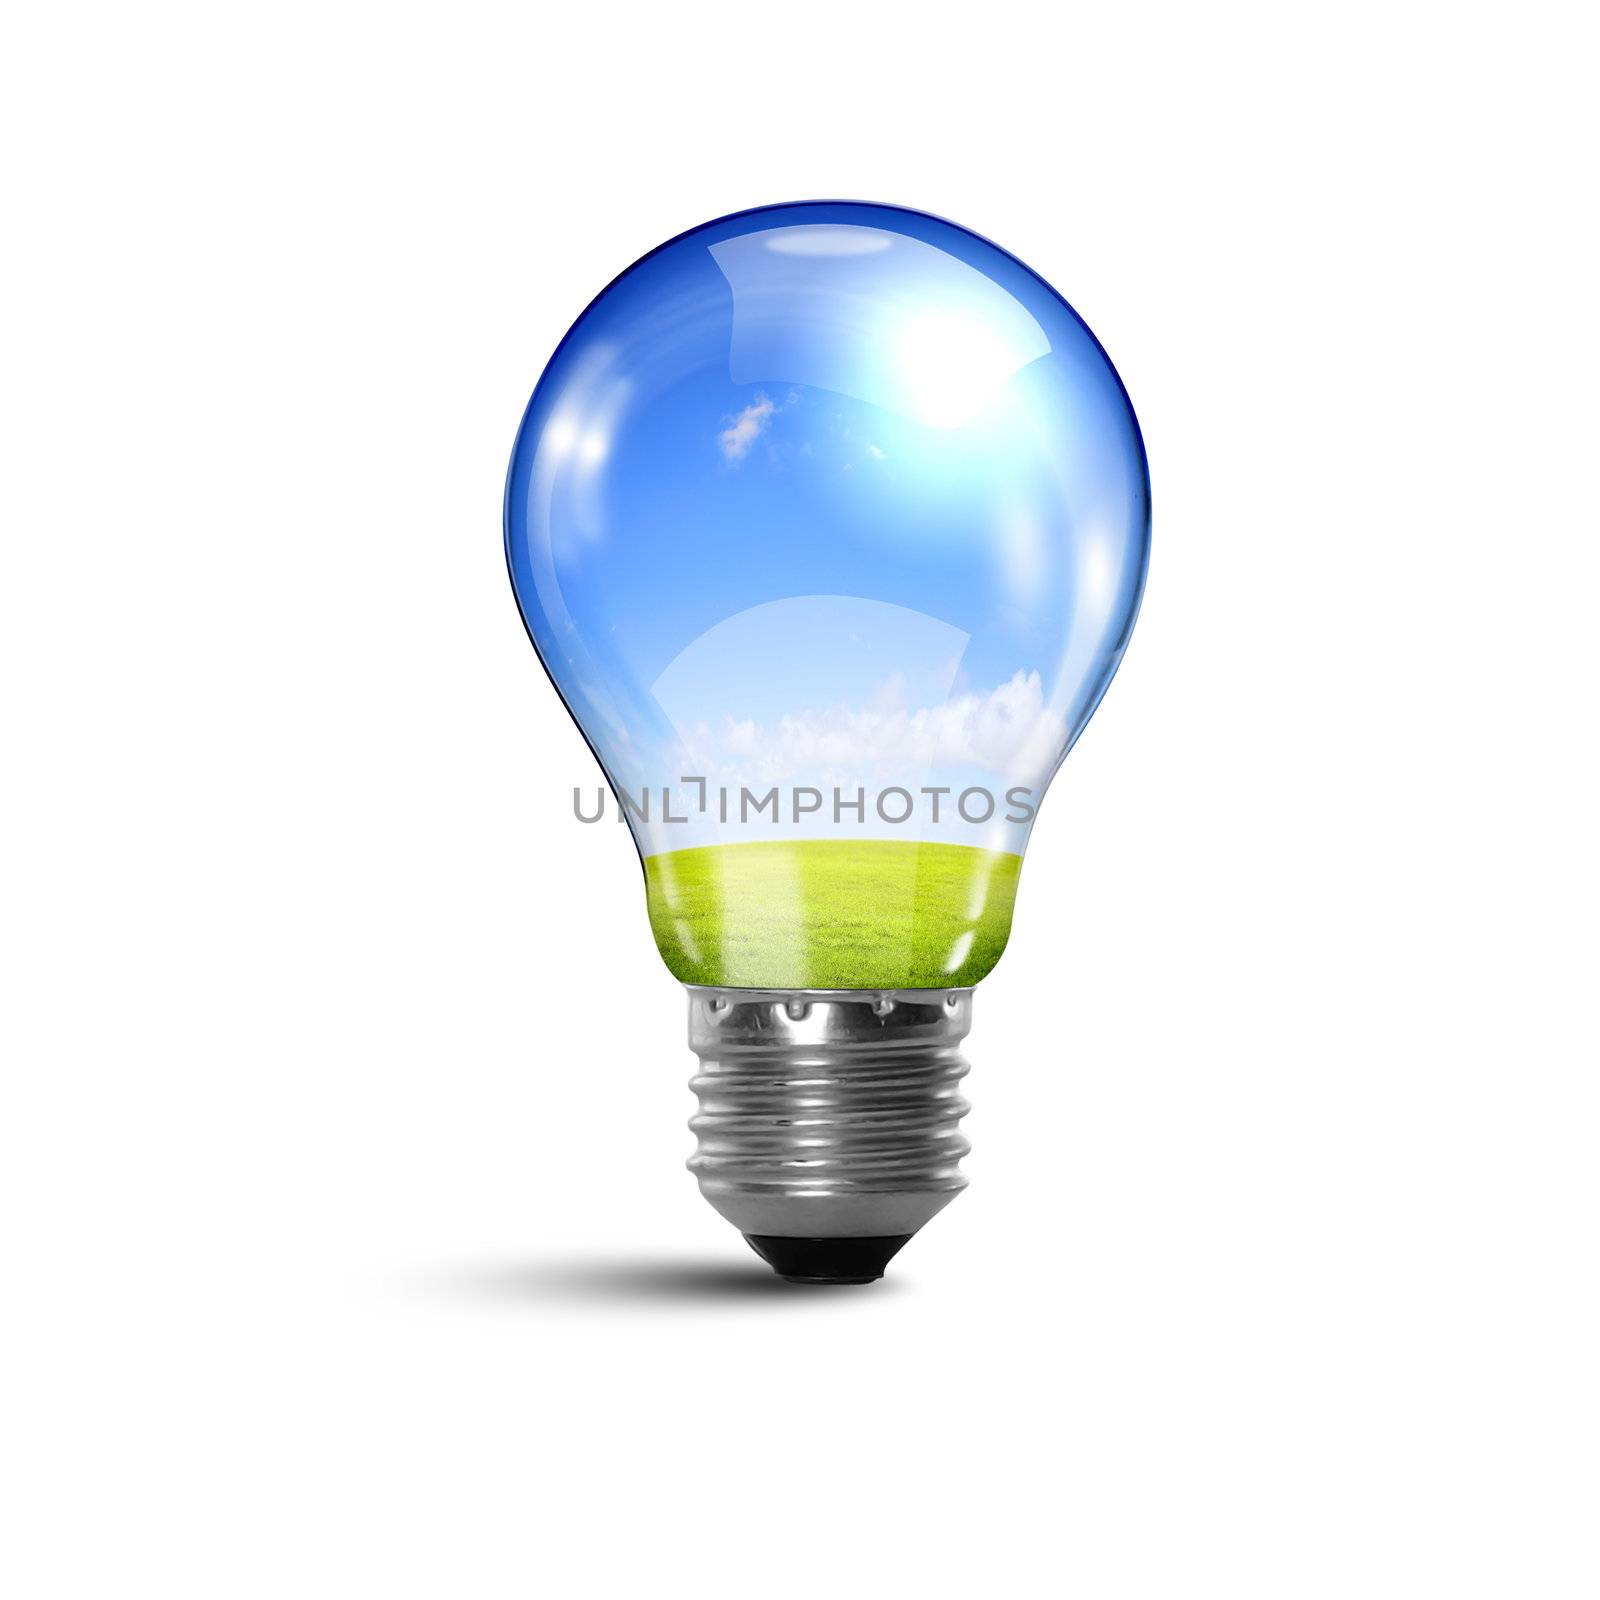 Ecology bulb light by sergey_nivens